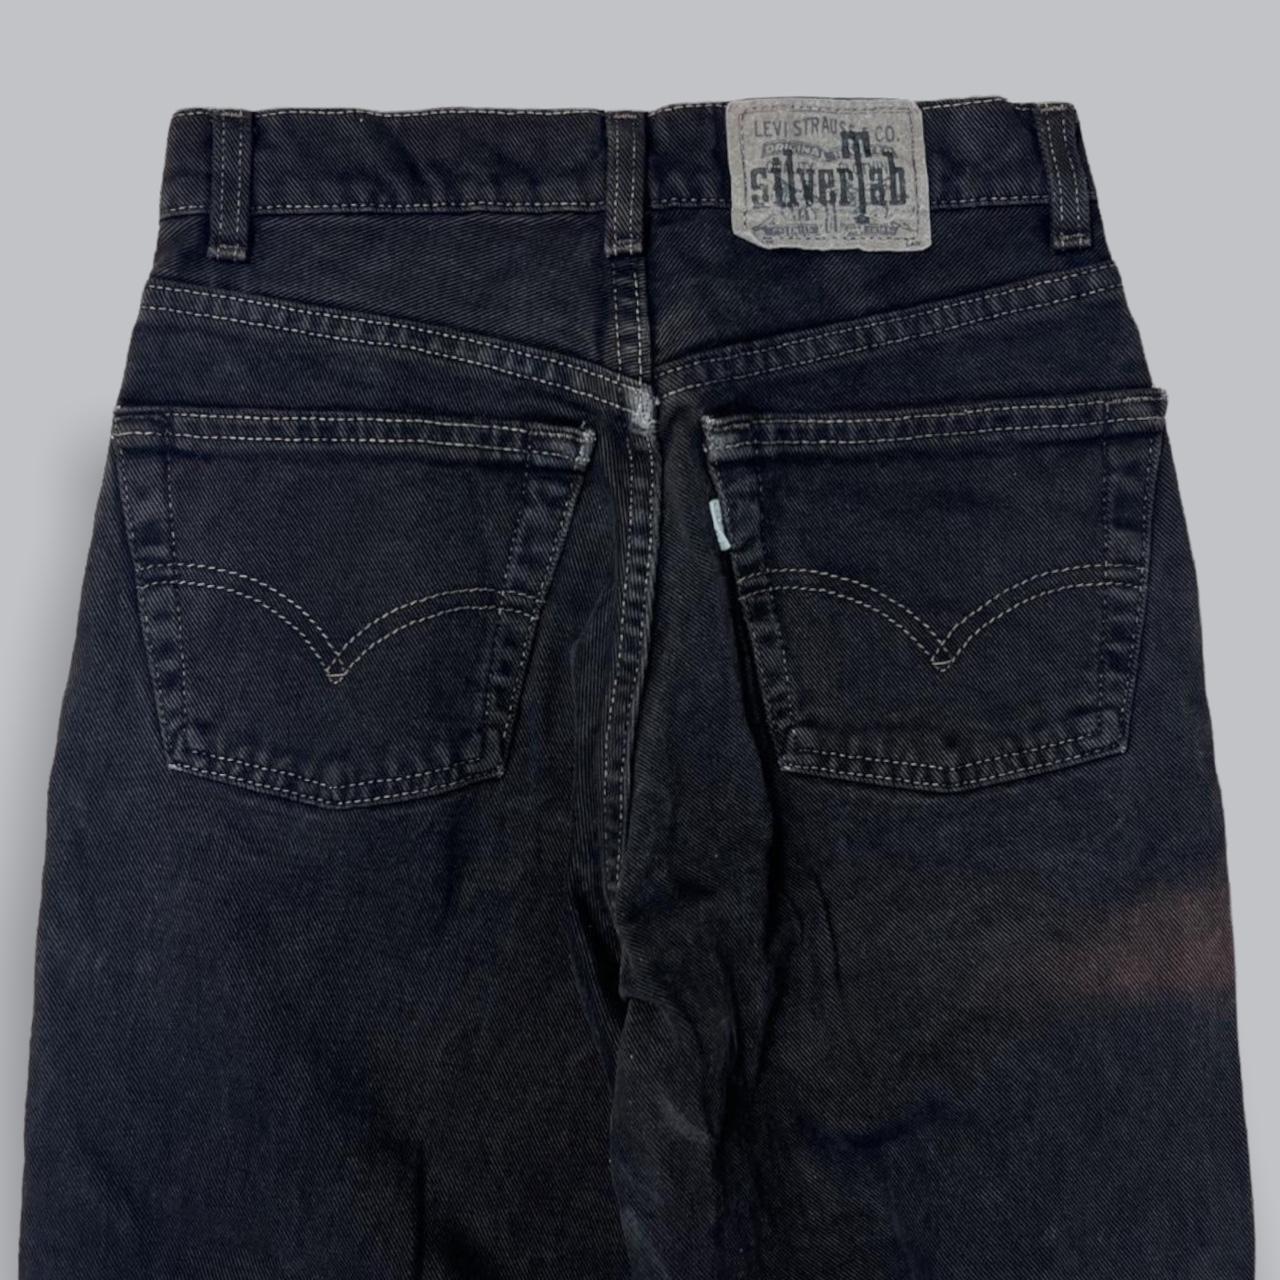 Levi’s Silvertab Black Jeans Loose Fit 📏 Size - W27... - Depop